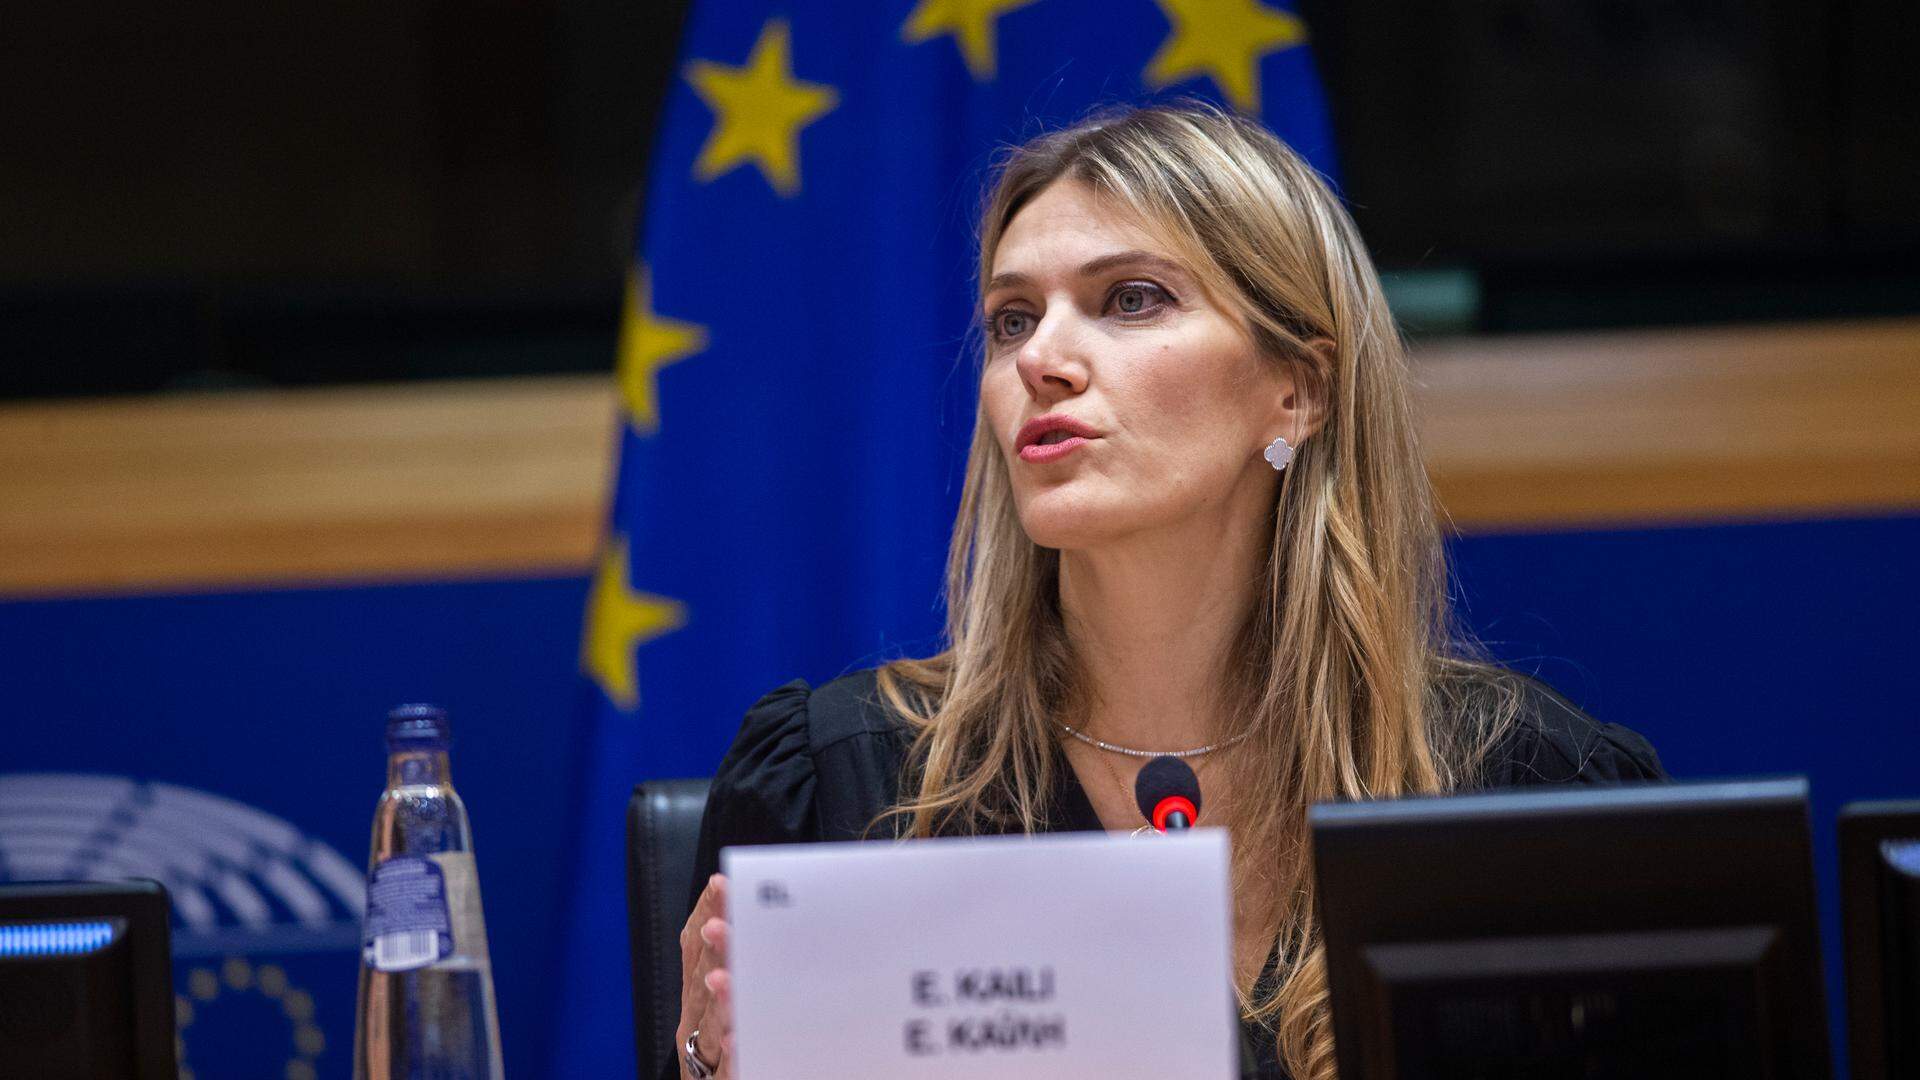 Soupçonnée de corruption, l'eurodéputée grecque Eva Kaili a affirmé  en avril qu'elle ne remettrait pas les pieds dans son pays natal avant d'être innocentée.